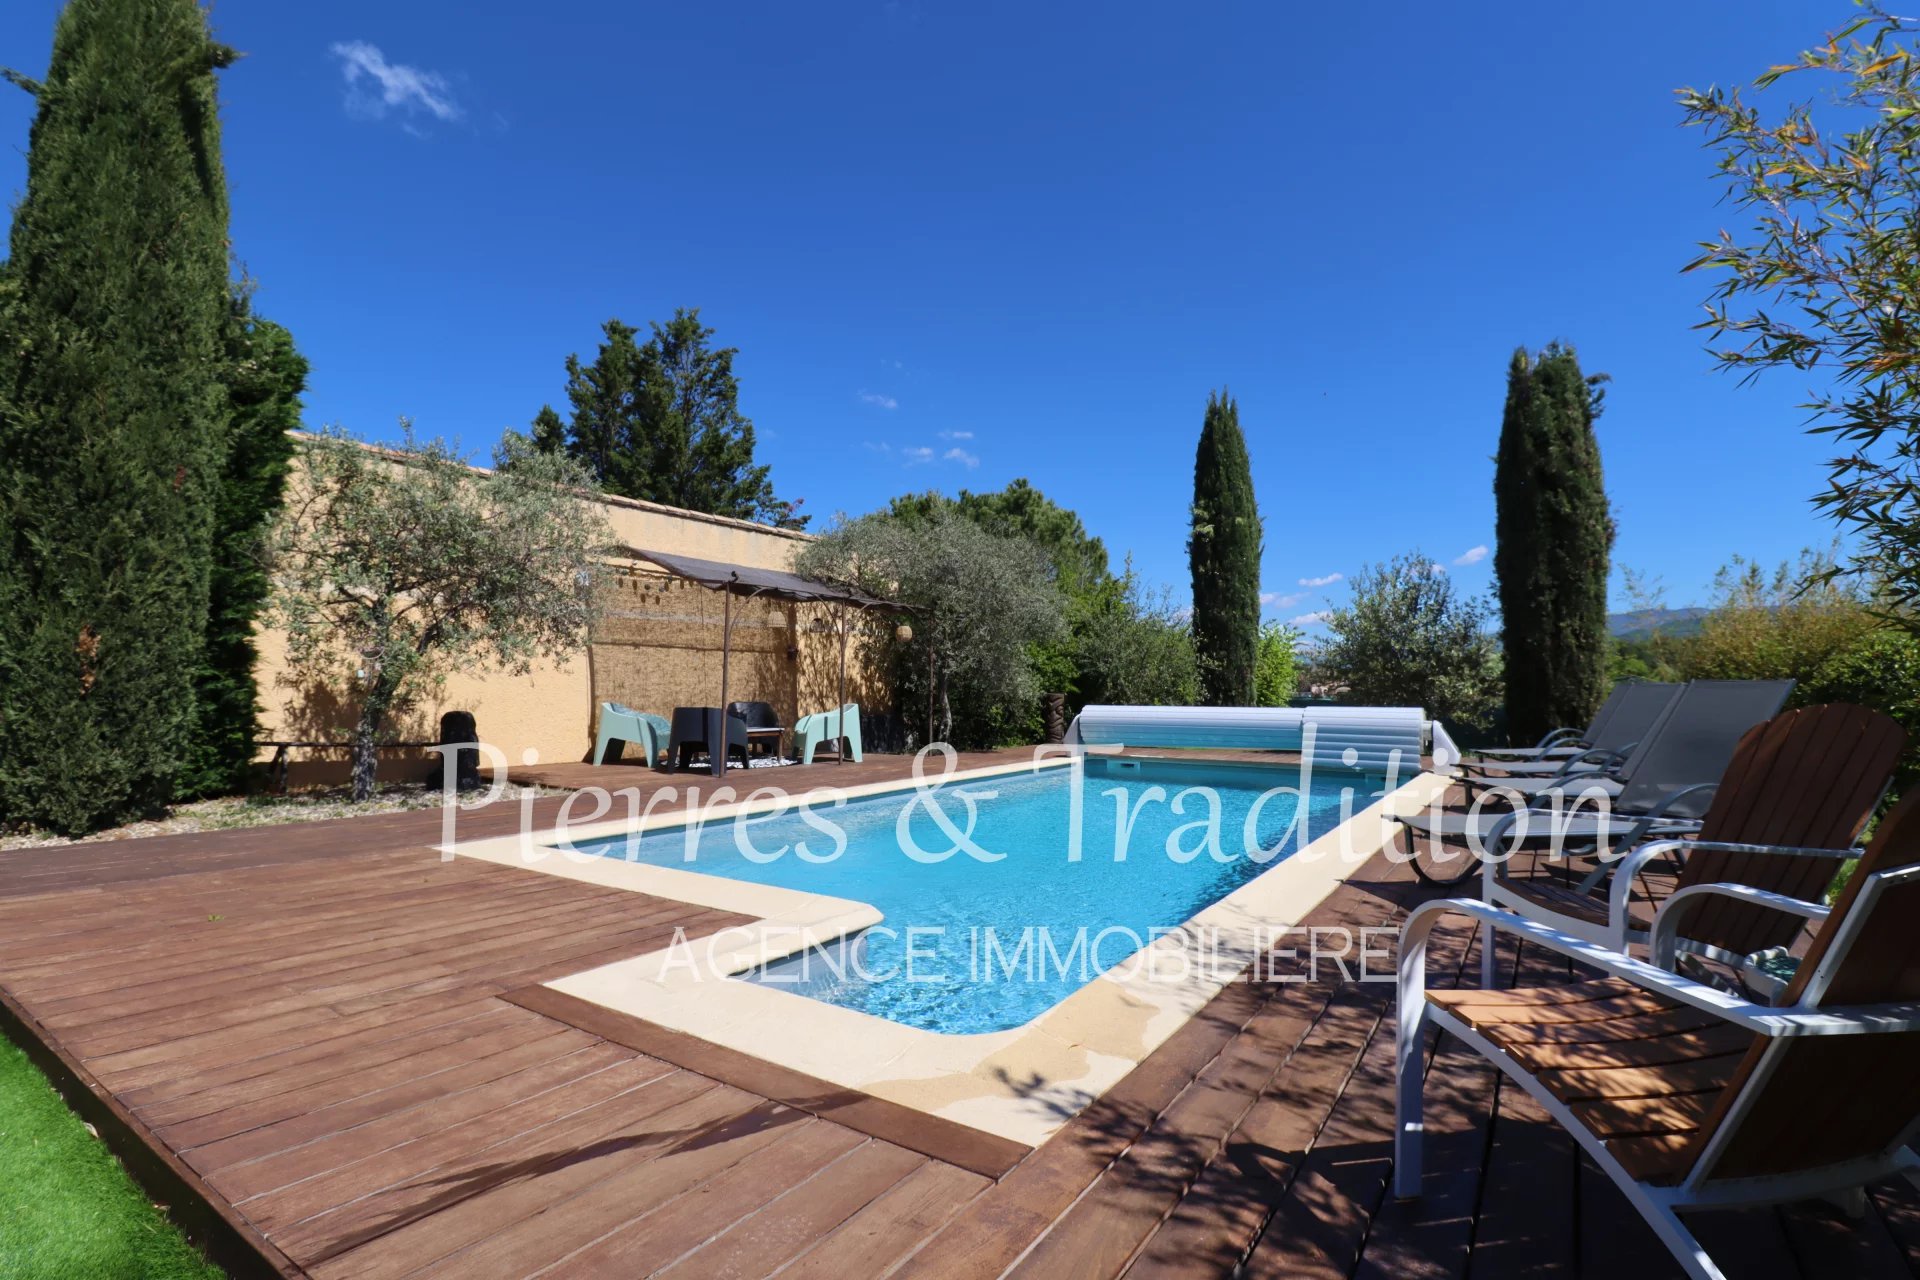 Jolie maison avec piscine et grand jardin disposant d'une belle vue dans le Luberon